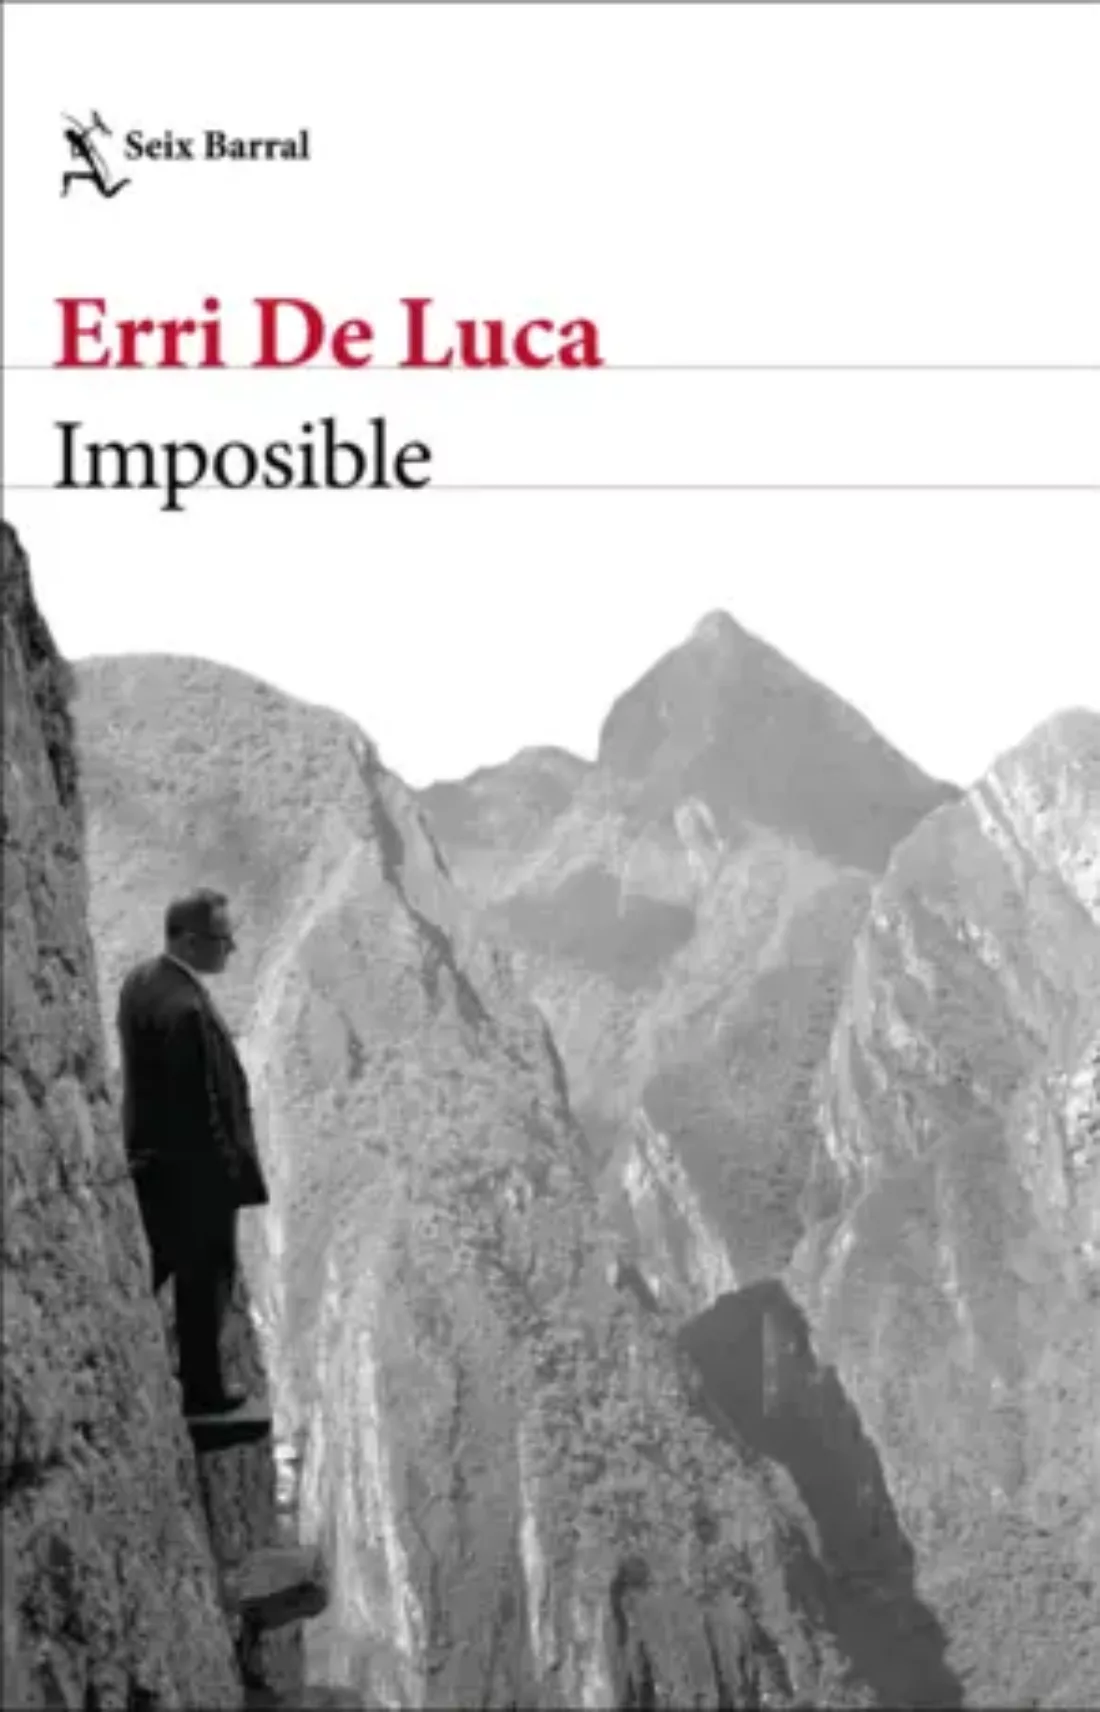 Leer y debatir: «Imposible» de Erri De Luca